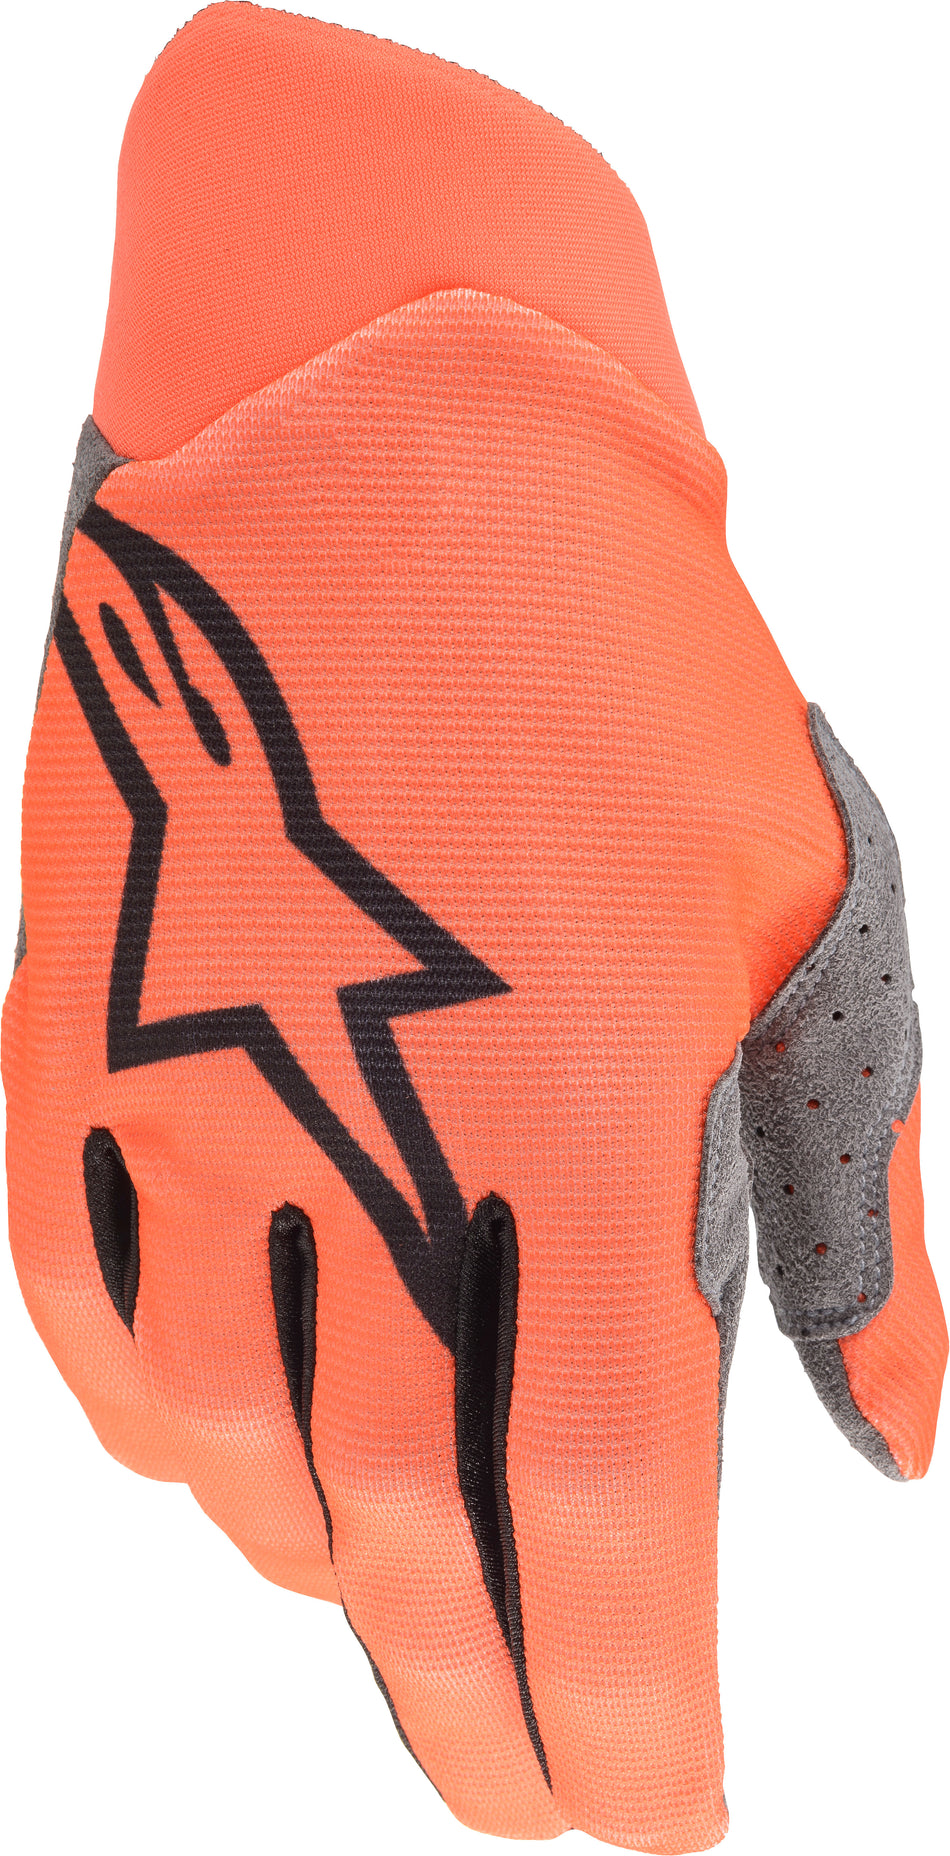 ALPINESTARS Dune Gloves Orange Md 3562520-440-M